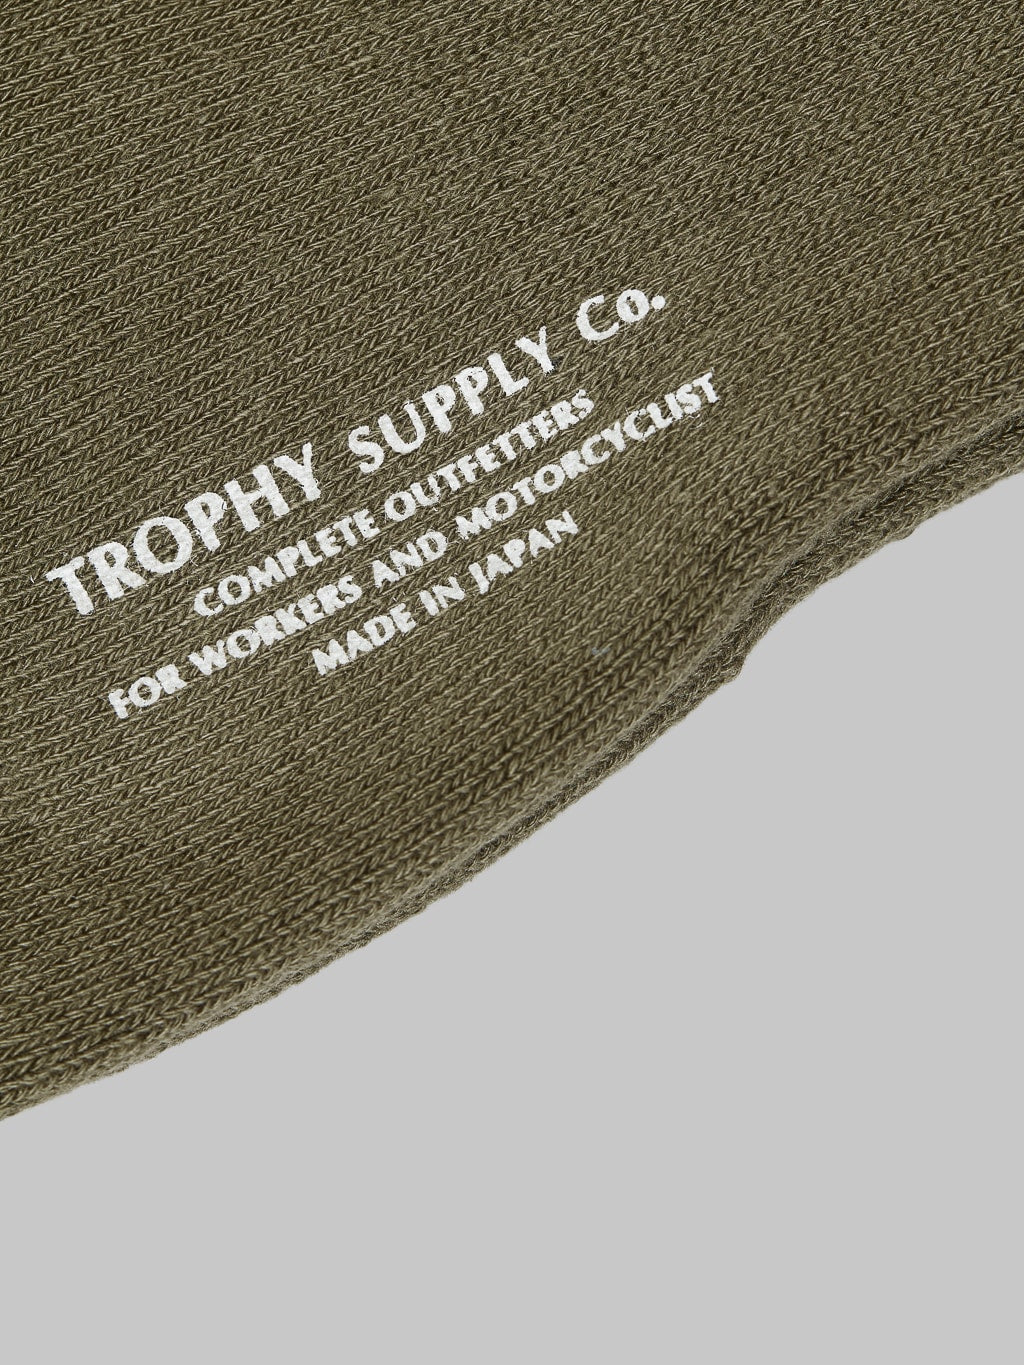 trophy clothing regular boots socks olive stamped logo